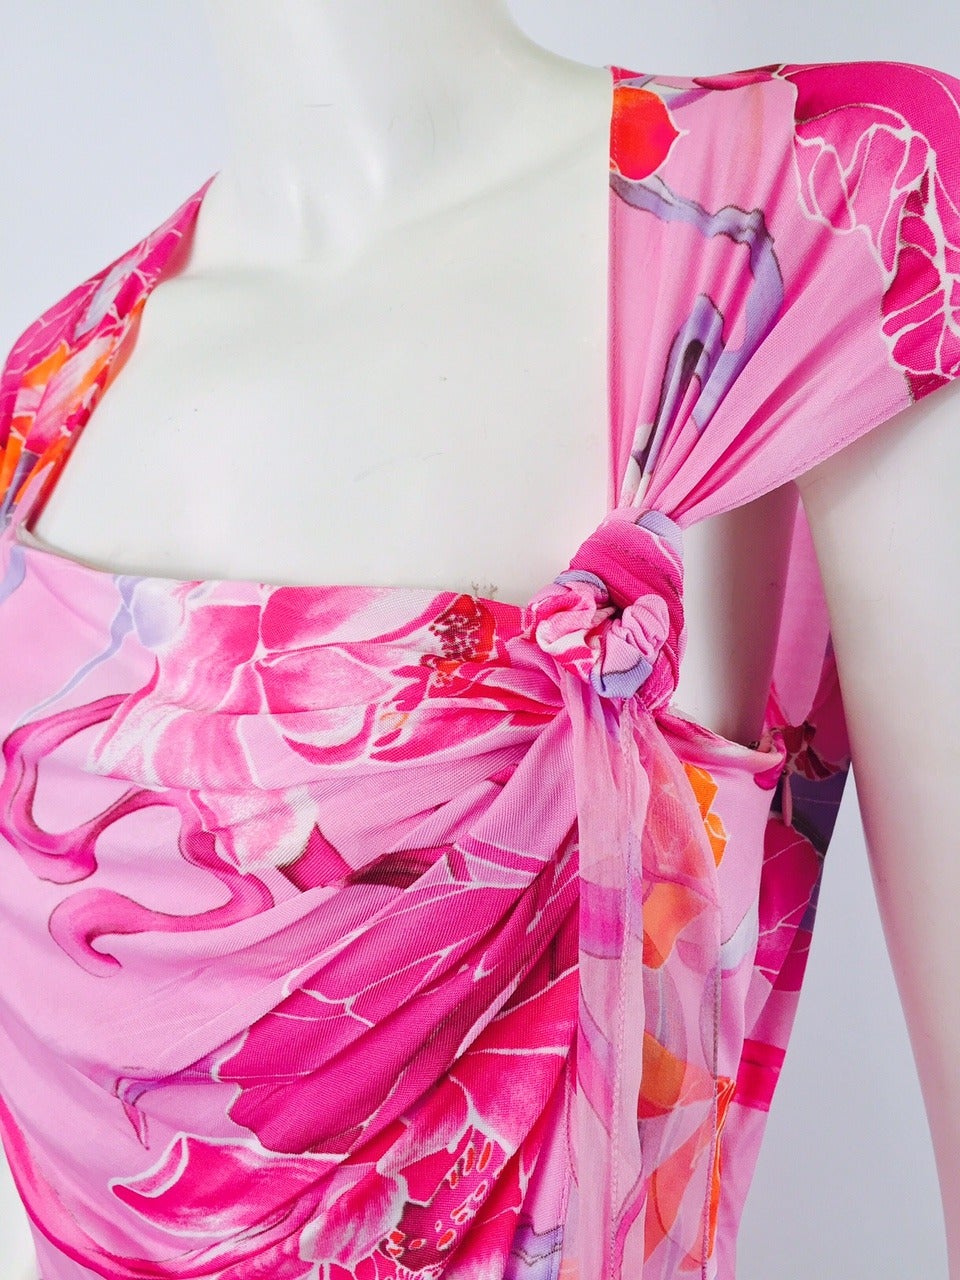 Emanuel Ungaro Pink Floral Bias Cut Wrap Dress For Sale 2